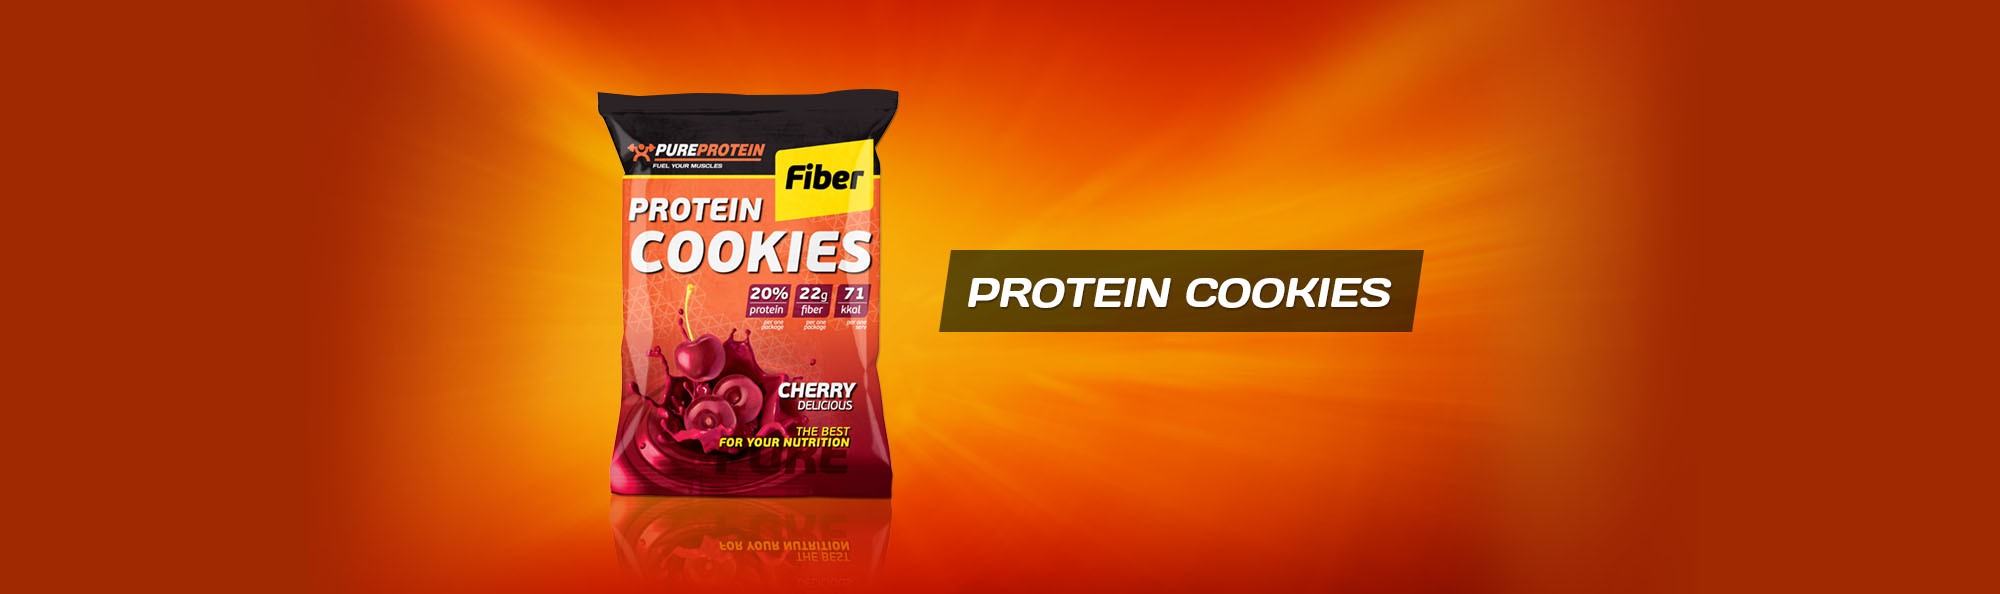 Высокобелковое диетическое печенье Protein Cookies Fiber от PureProtein